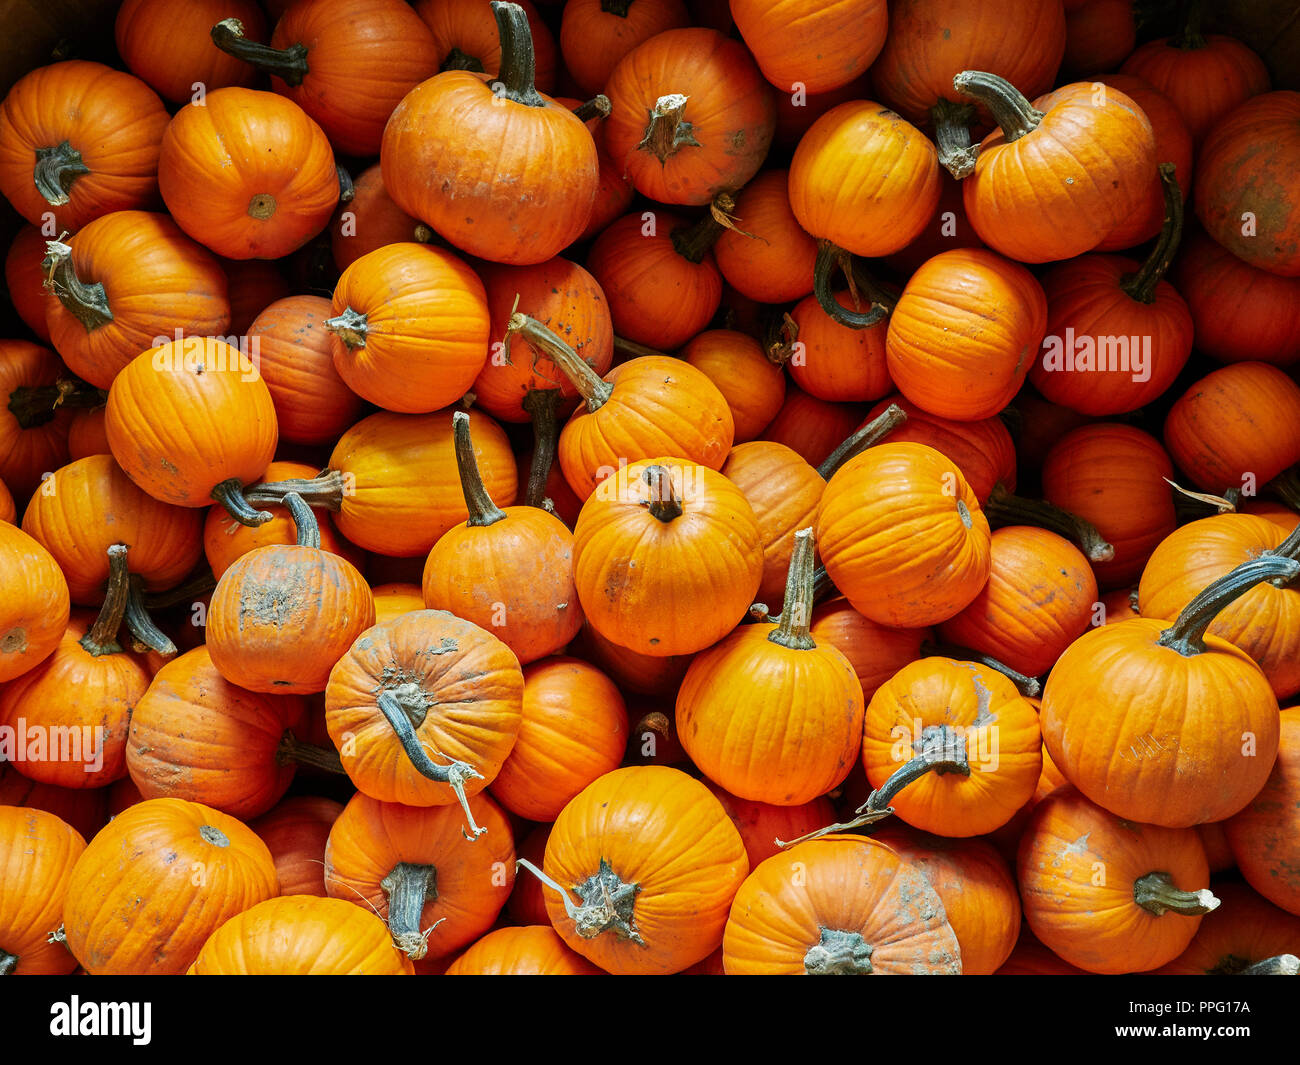 Kürbisse, frisch aus der Ernte, zeigen ihre orangene Herbst- oder Herbstfarbe in einem Stapel, der auf Peach Park Farms, Clanton Alabama, USA, zum Verkauf angeboten wird. Stockfoto